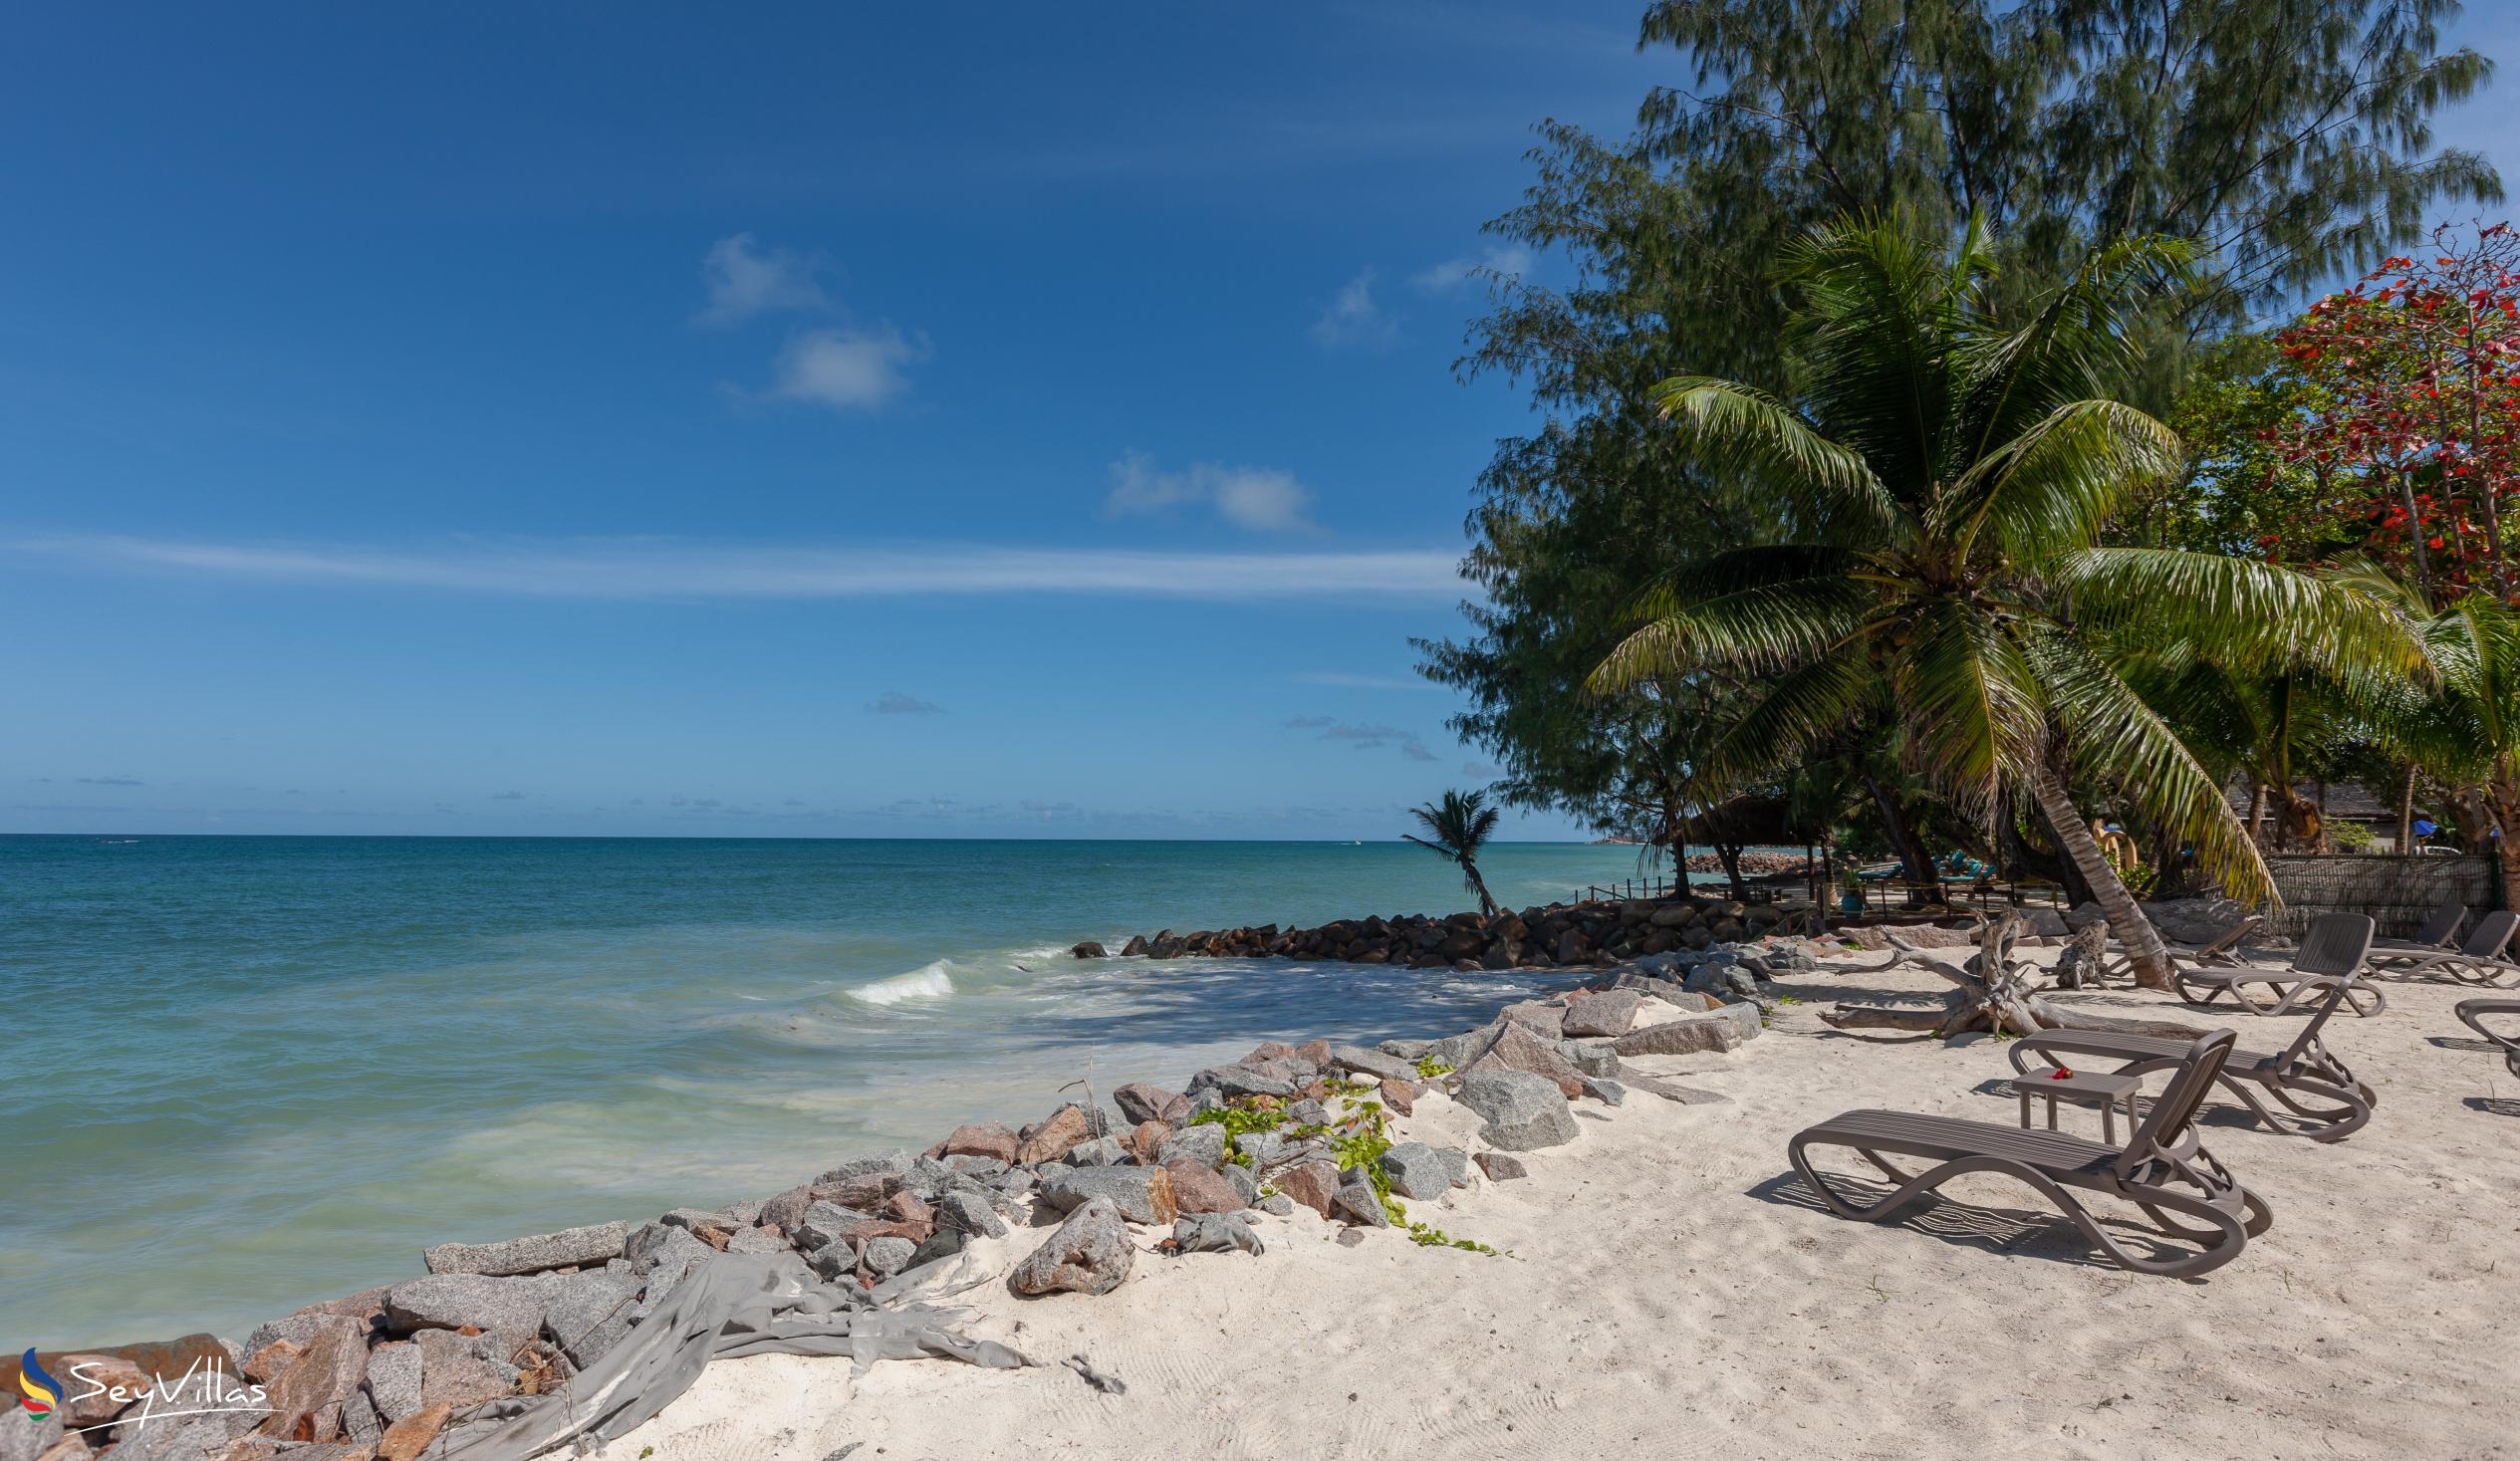 Foto 41: Villas Coco Beach - Lage - Praslin (Seychellen)